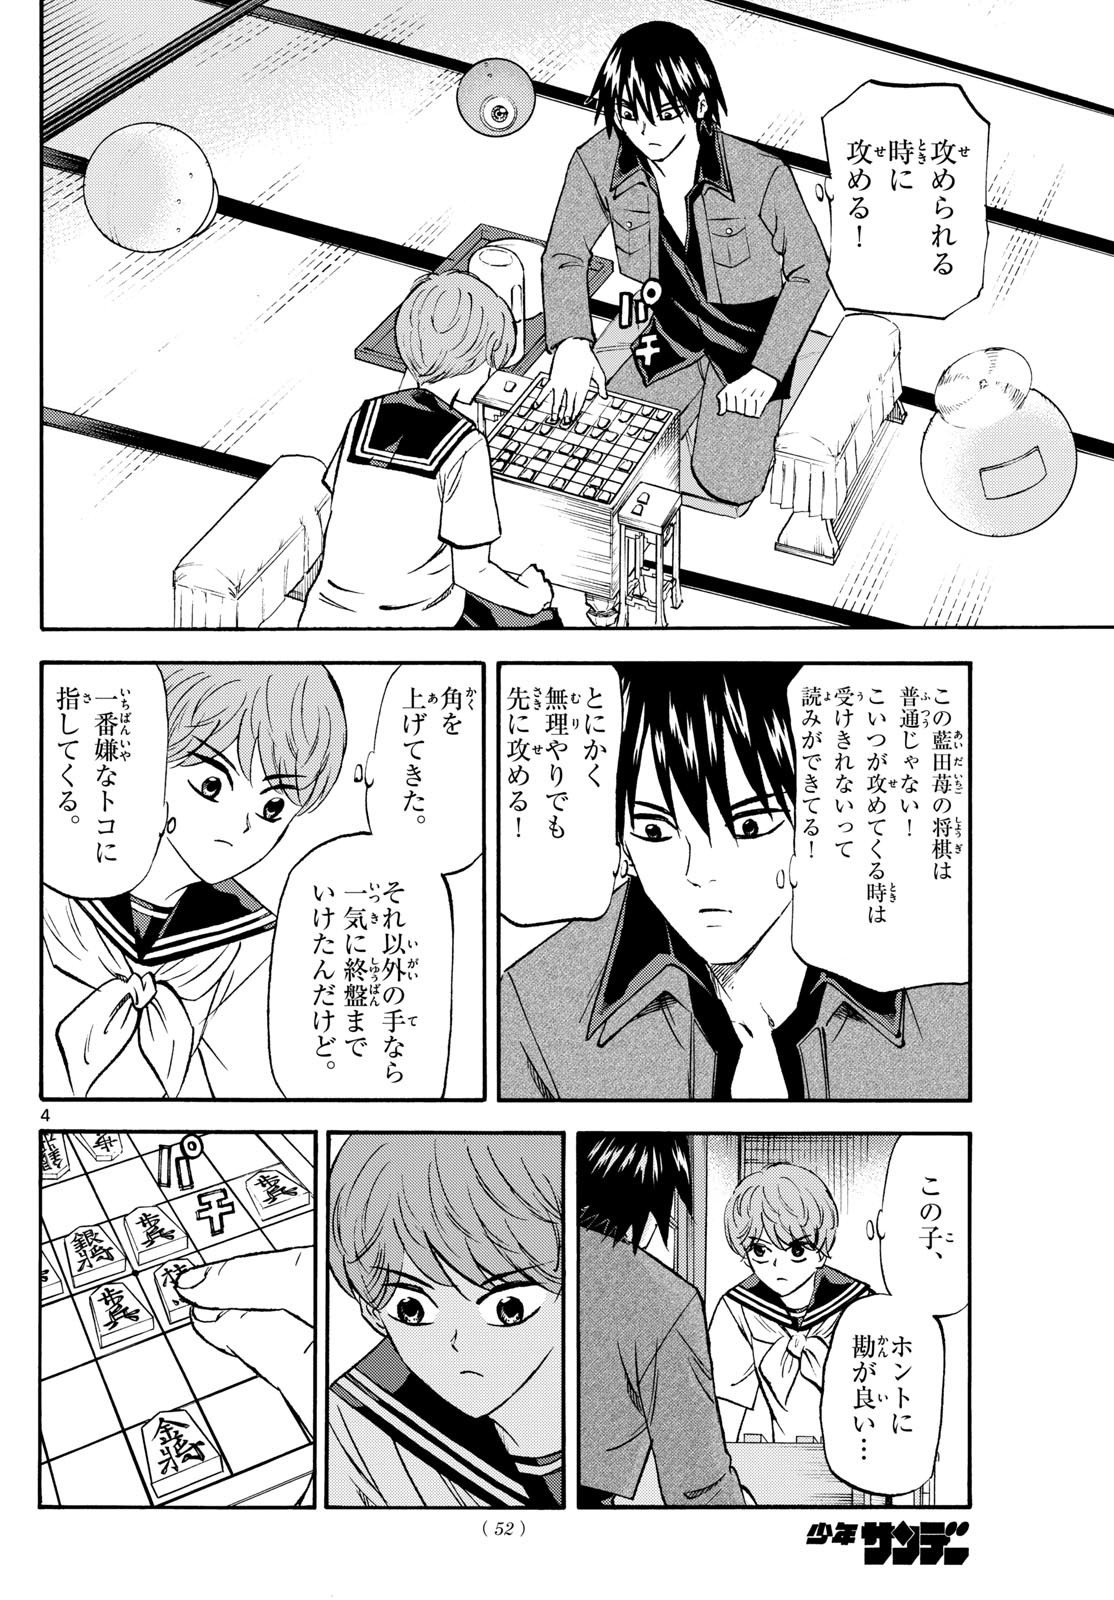 Ryu-to-Ichigo - Chapter 194 - Page 4